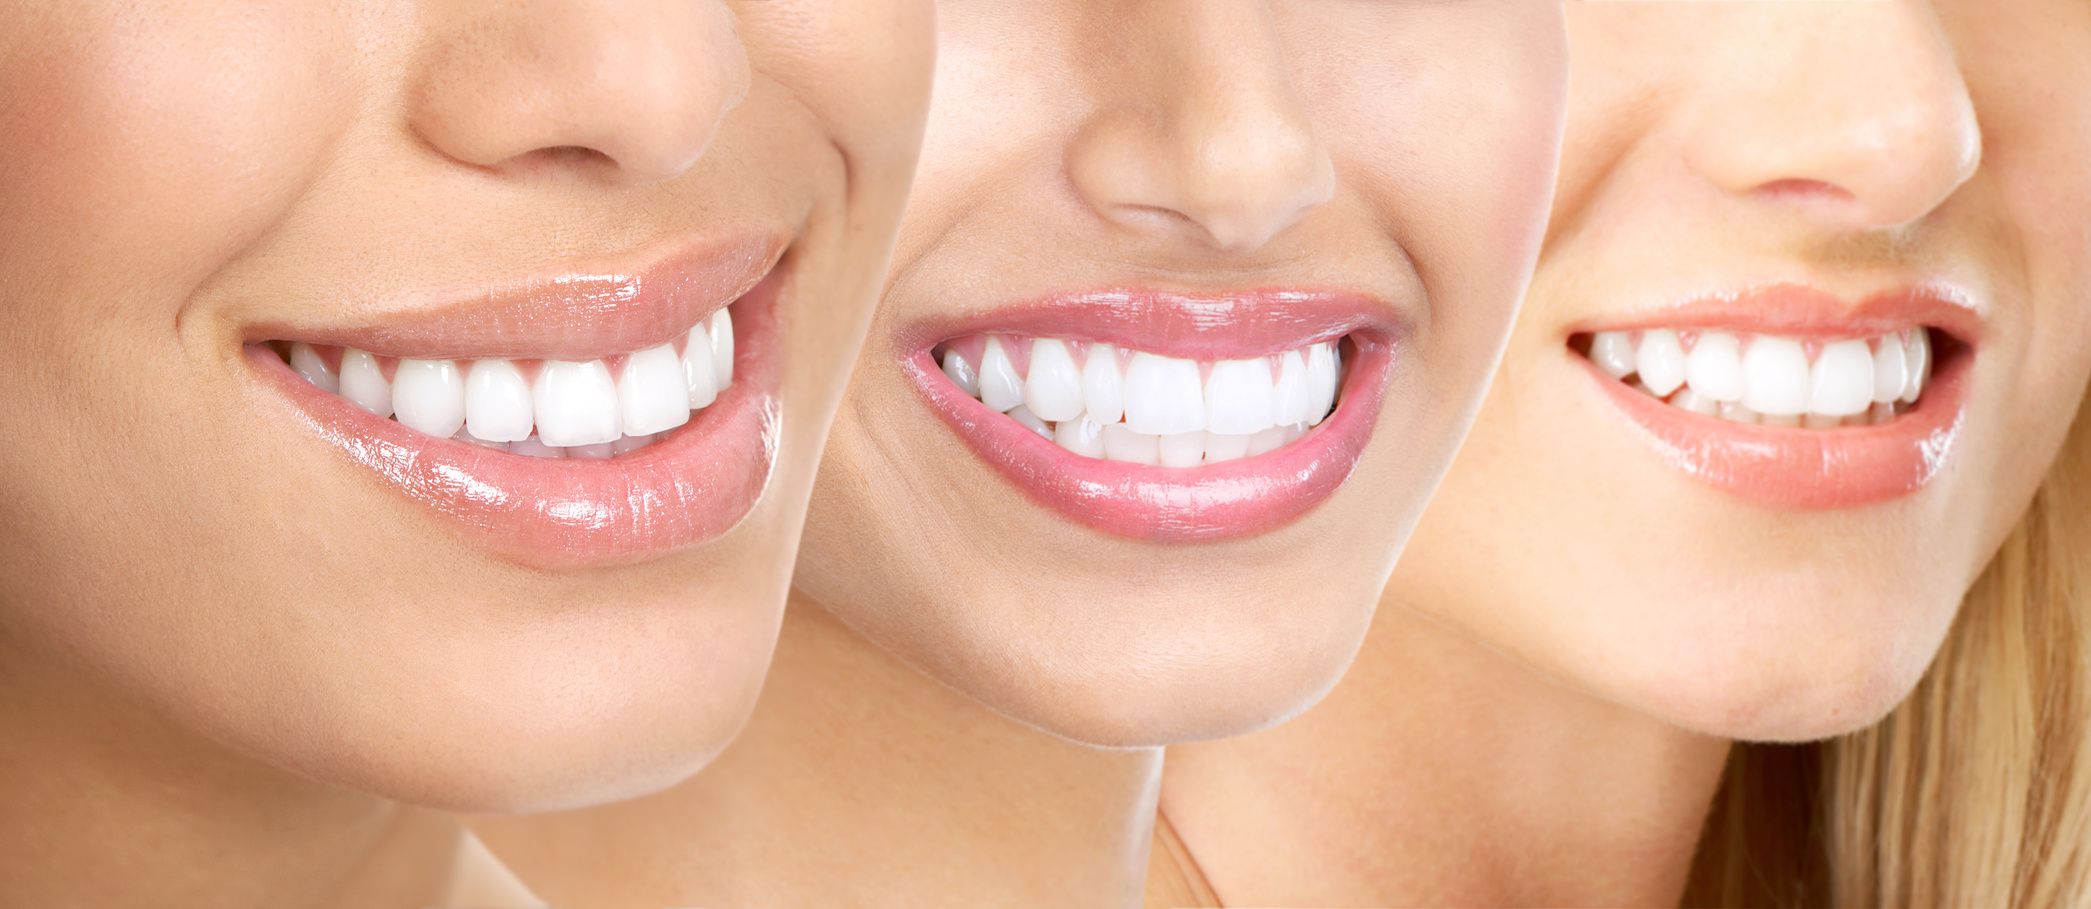 Sau khi tẩy trắng răng không nên ăn gì?